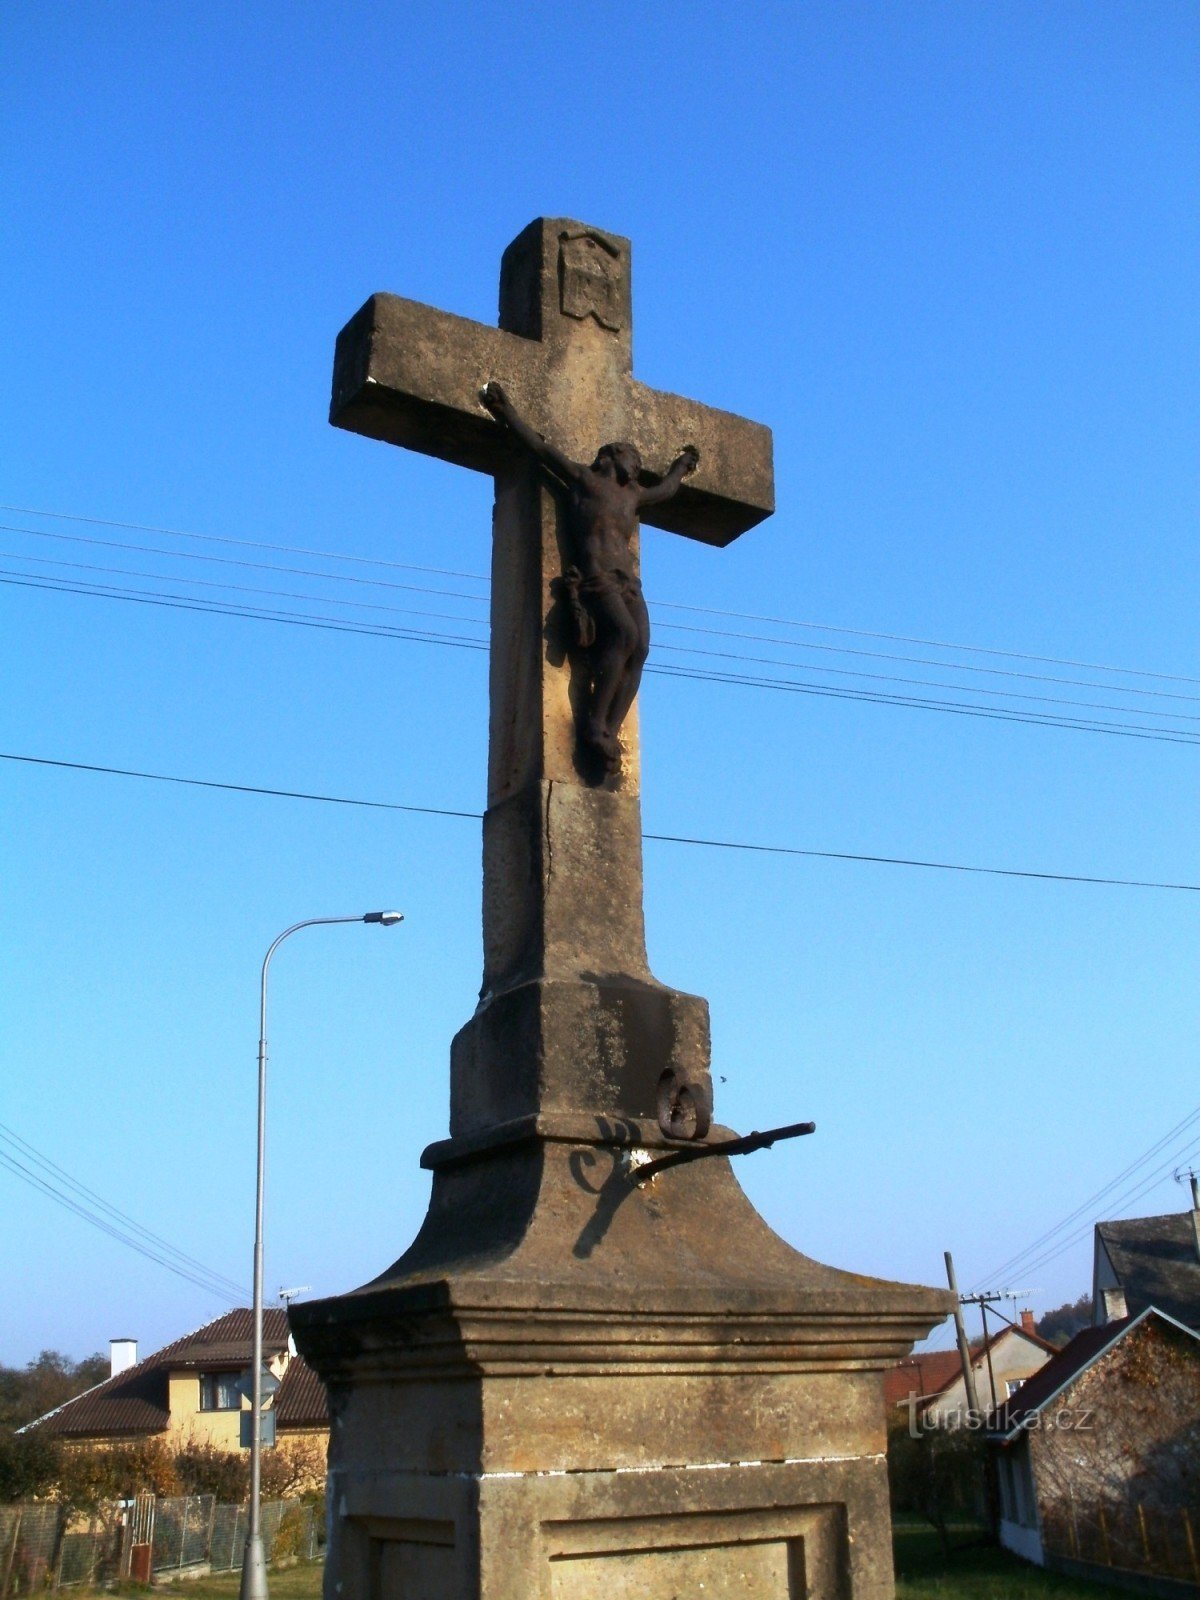 Vysoké Veselí - stenen kruis